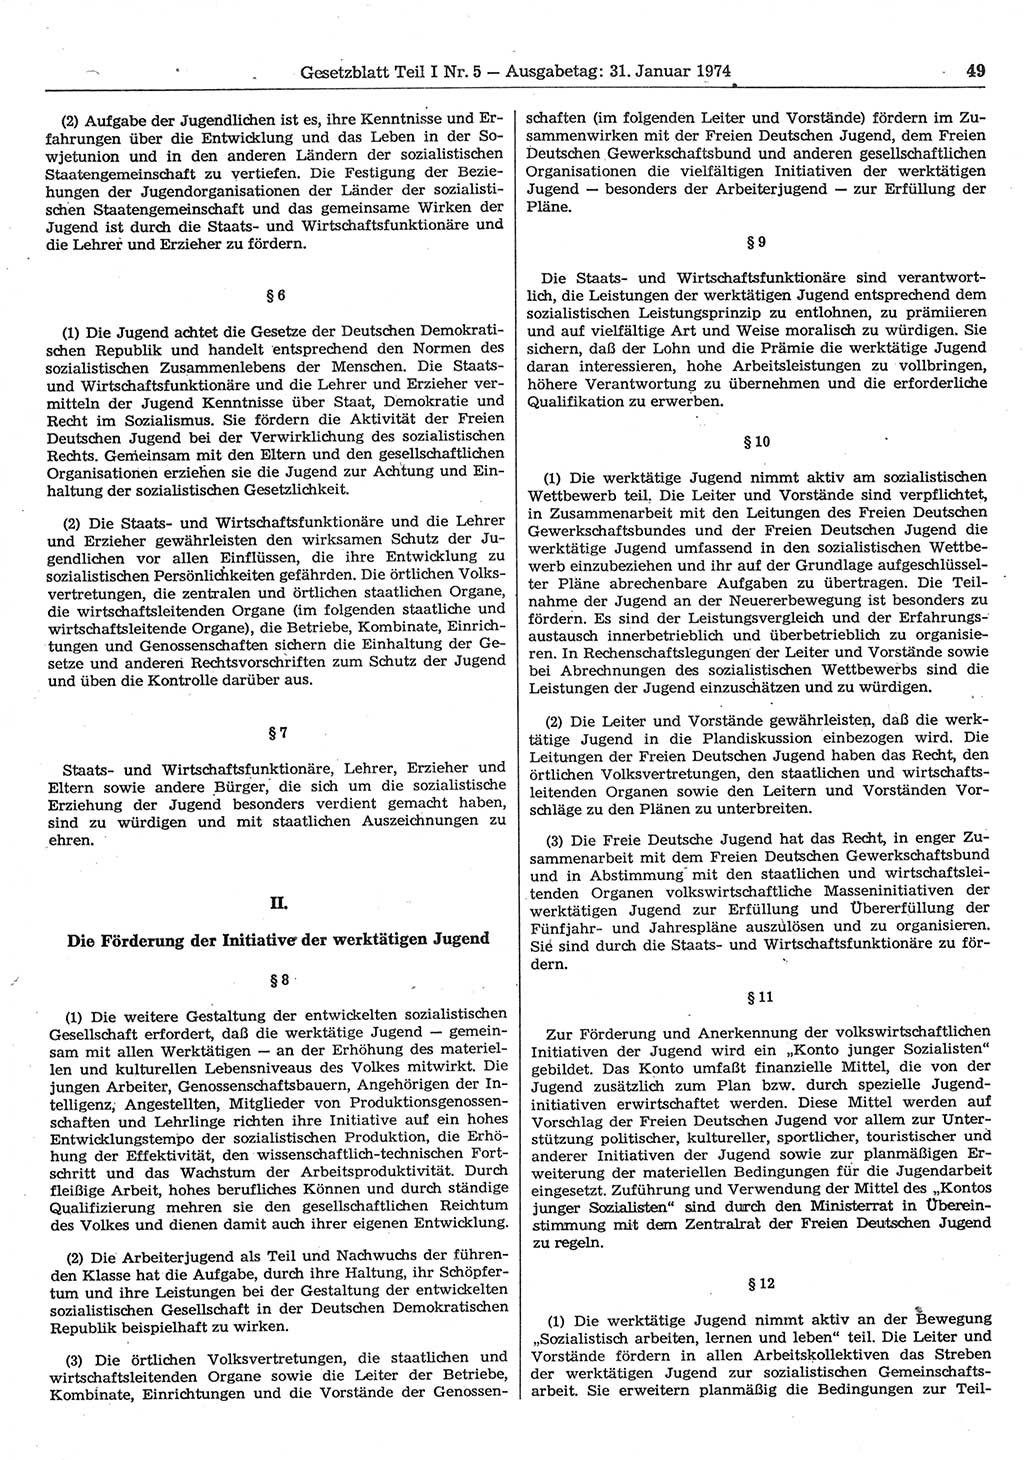 Gesetzblatt (GBl.) der Deutschen Demokratischen Republik (DDR) Teil Ⅰ 1974, Seite 49 (GBl. DDR Ⅰ 1974, S. 49)